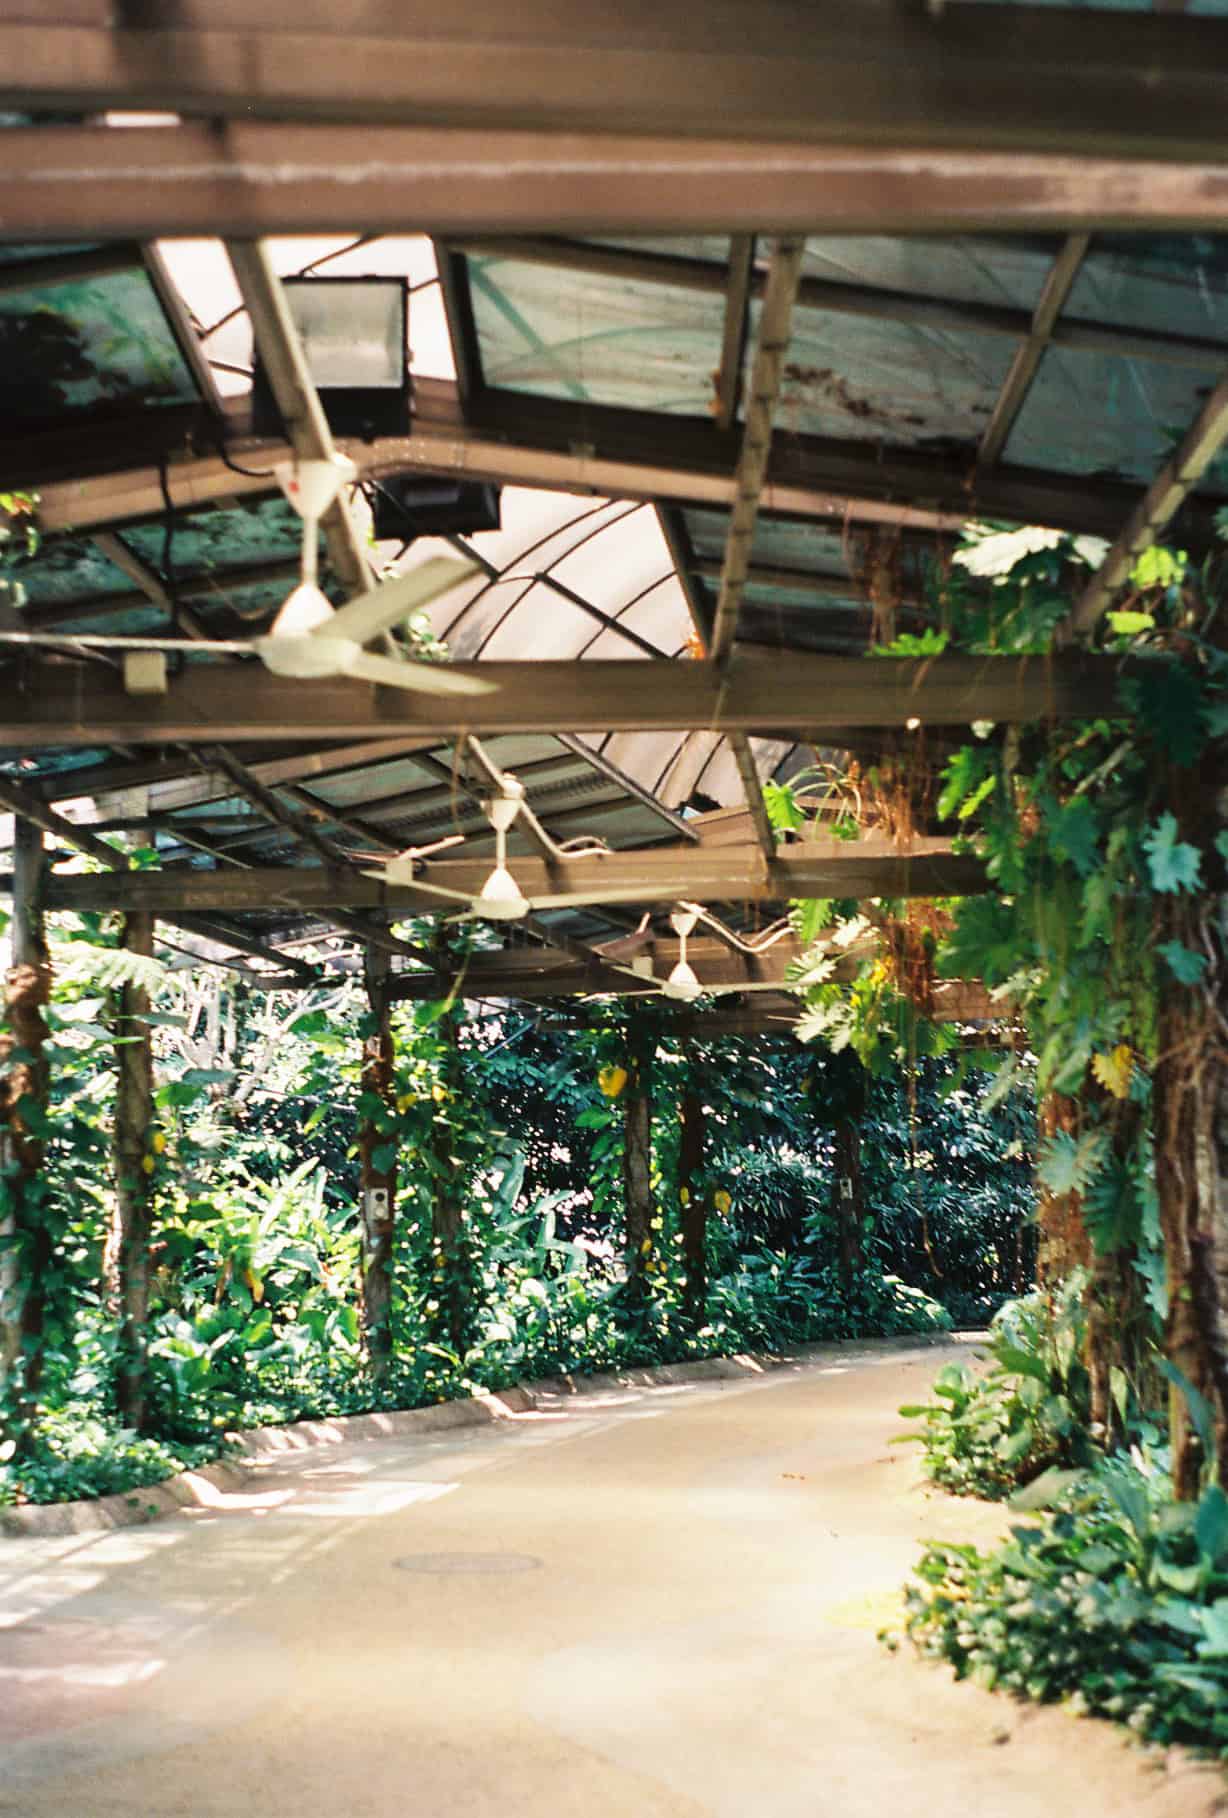 Botanical Gardens in KL (Kuala Lumpur)